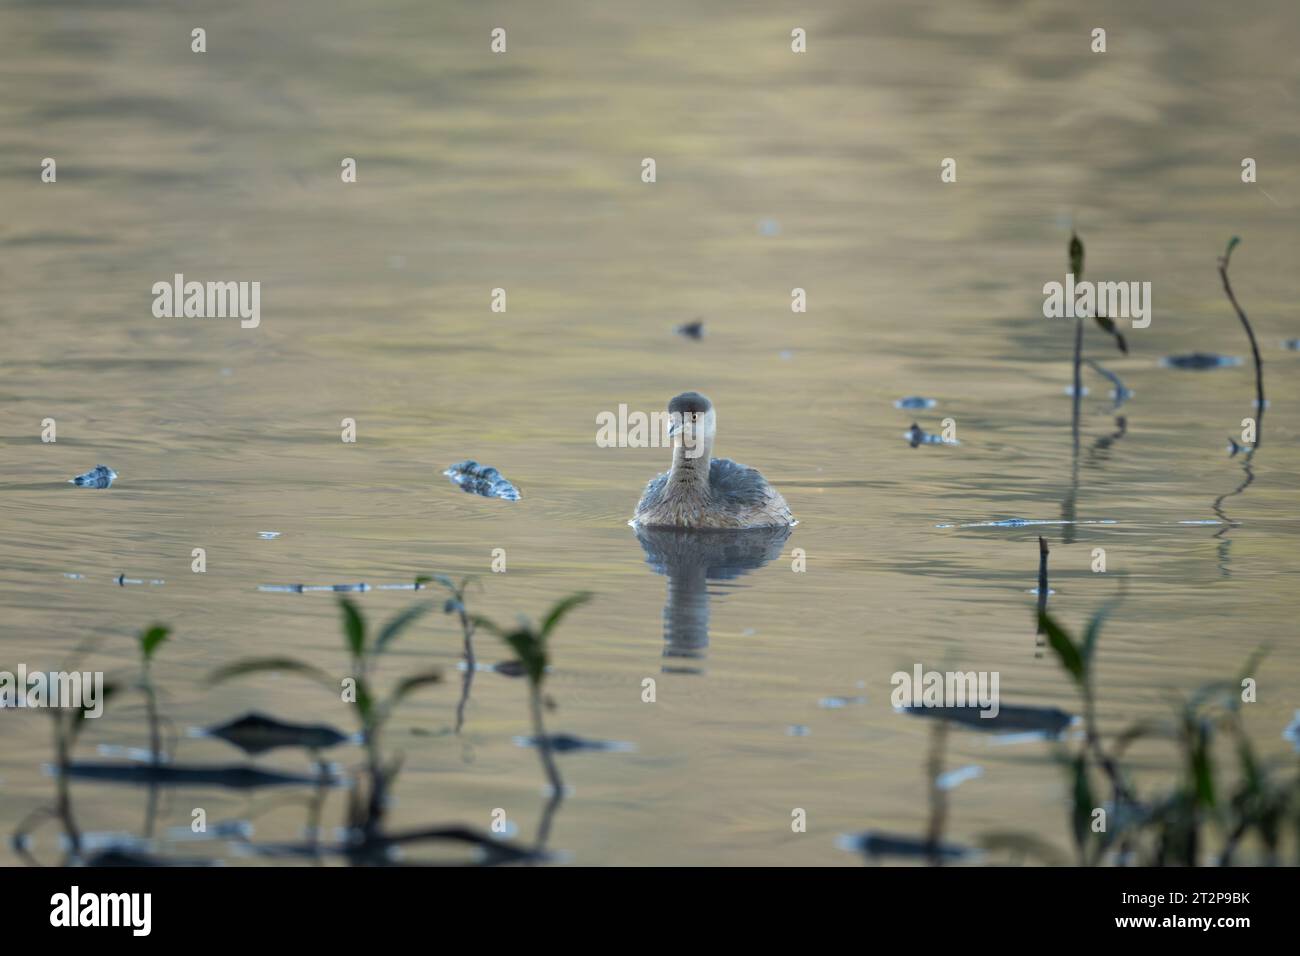 Un grèbe australasien nage vers l'avant parmi la végétation sur le rivage du marais Hasties sur les terres humides de Nyleta à Atherton, Auistralia. Banque D'Images